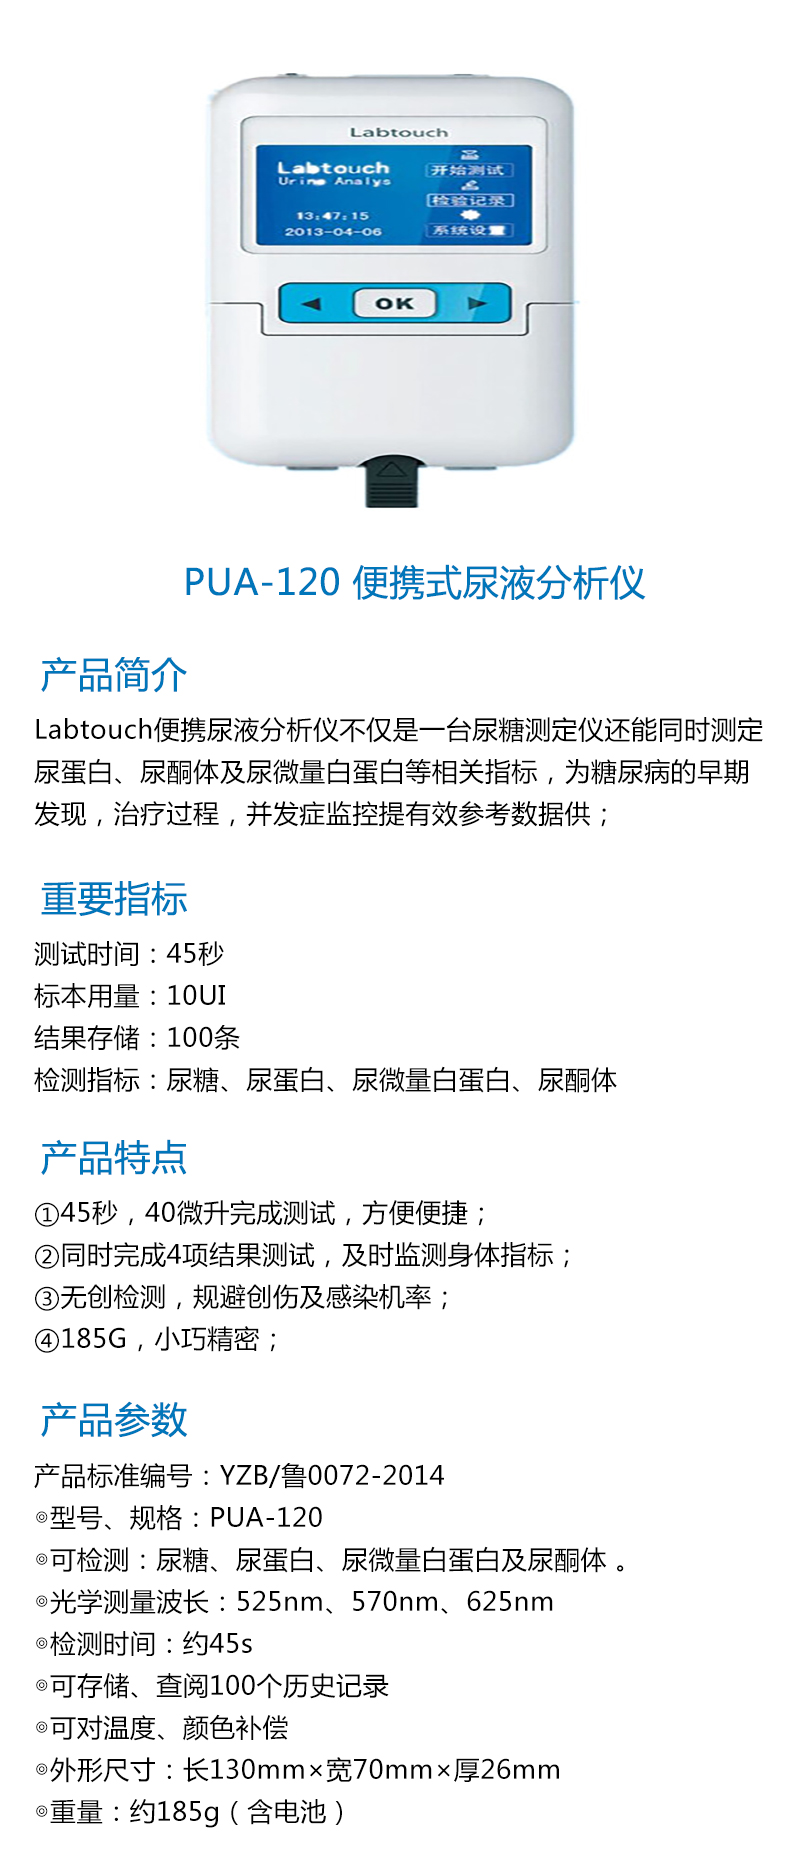 耀华便携式尿液分析仪PUA-120 产品特点